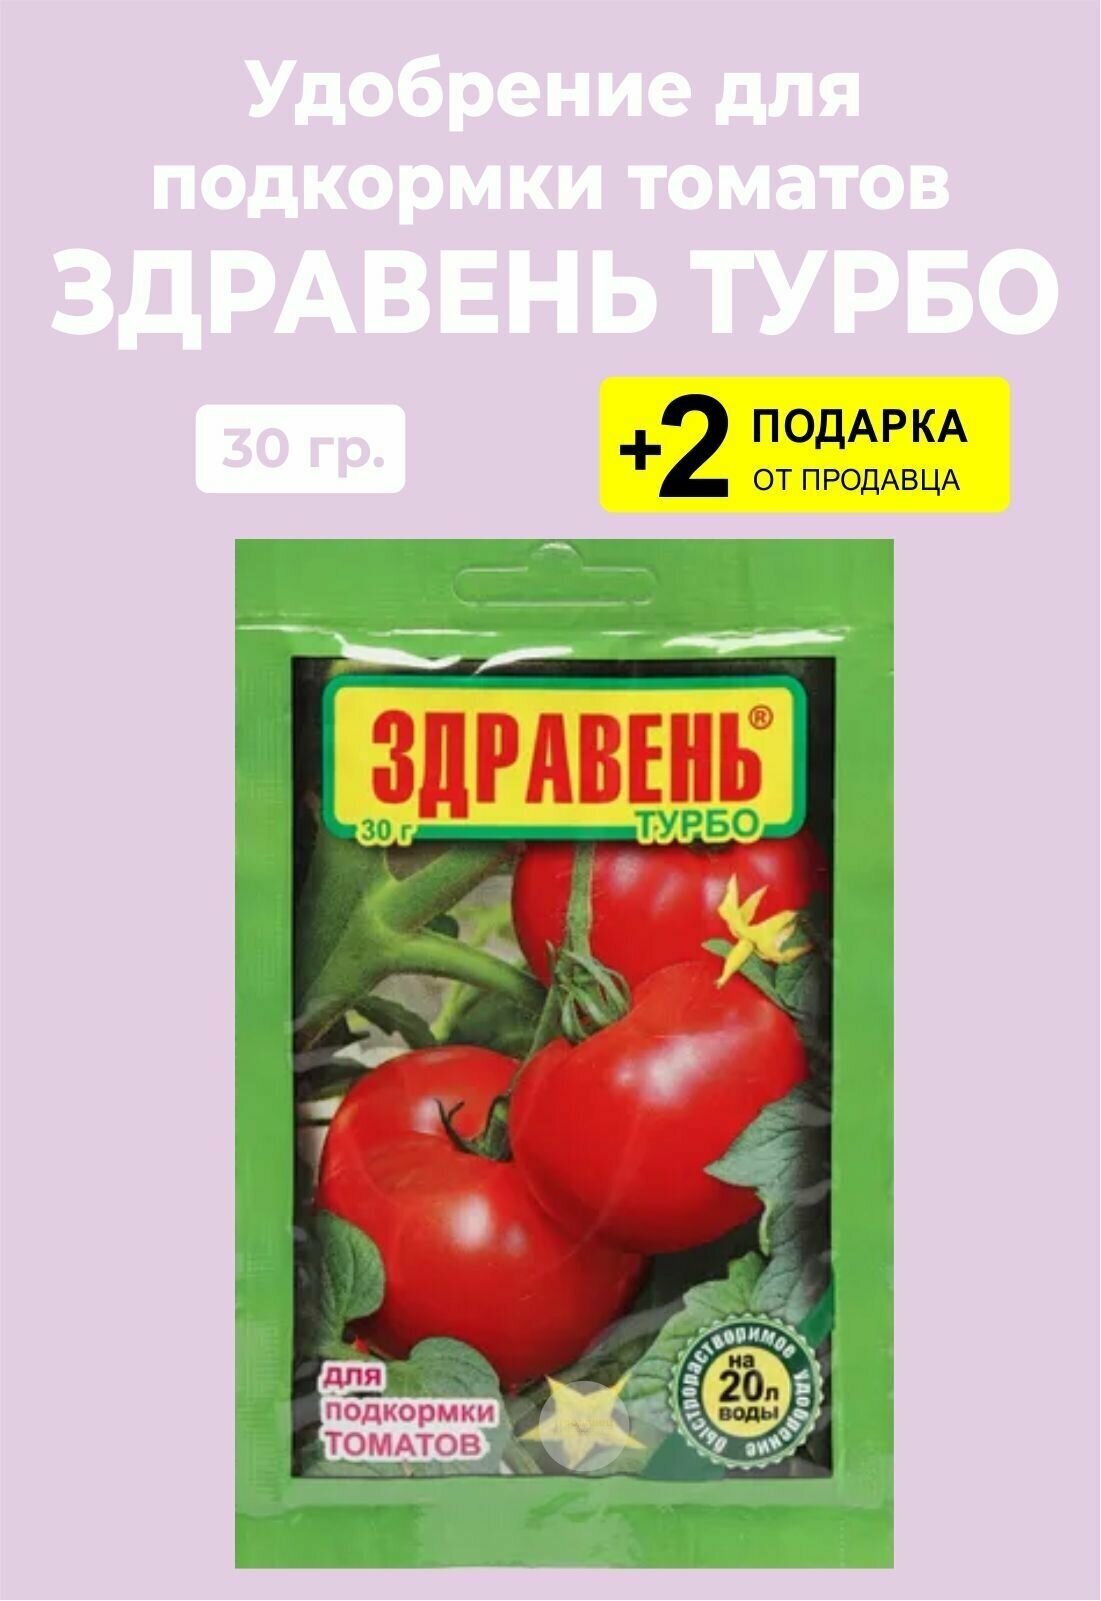 Удобрение Здравень Турбо "Для Подкормки Томатов", 30 гр. + 2 Подарка